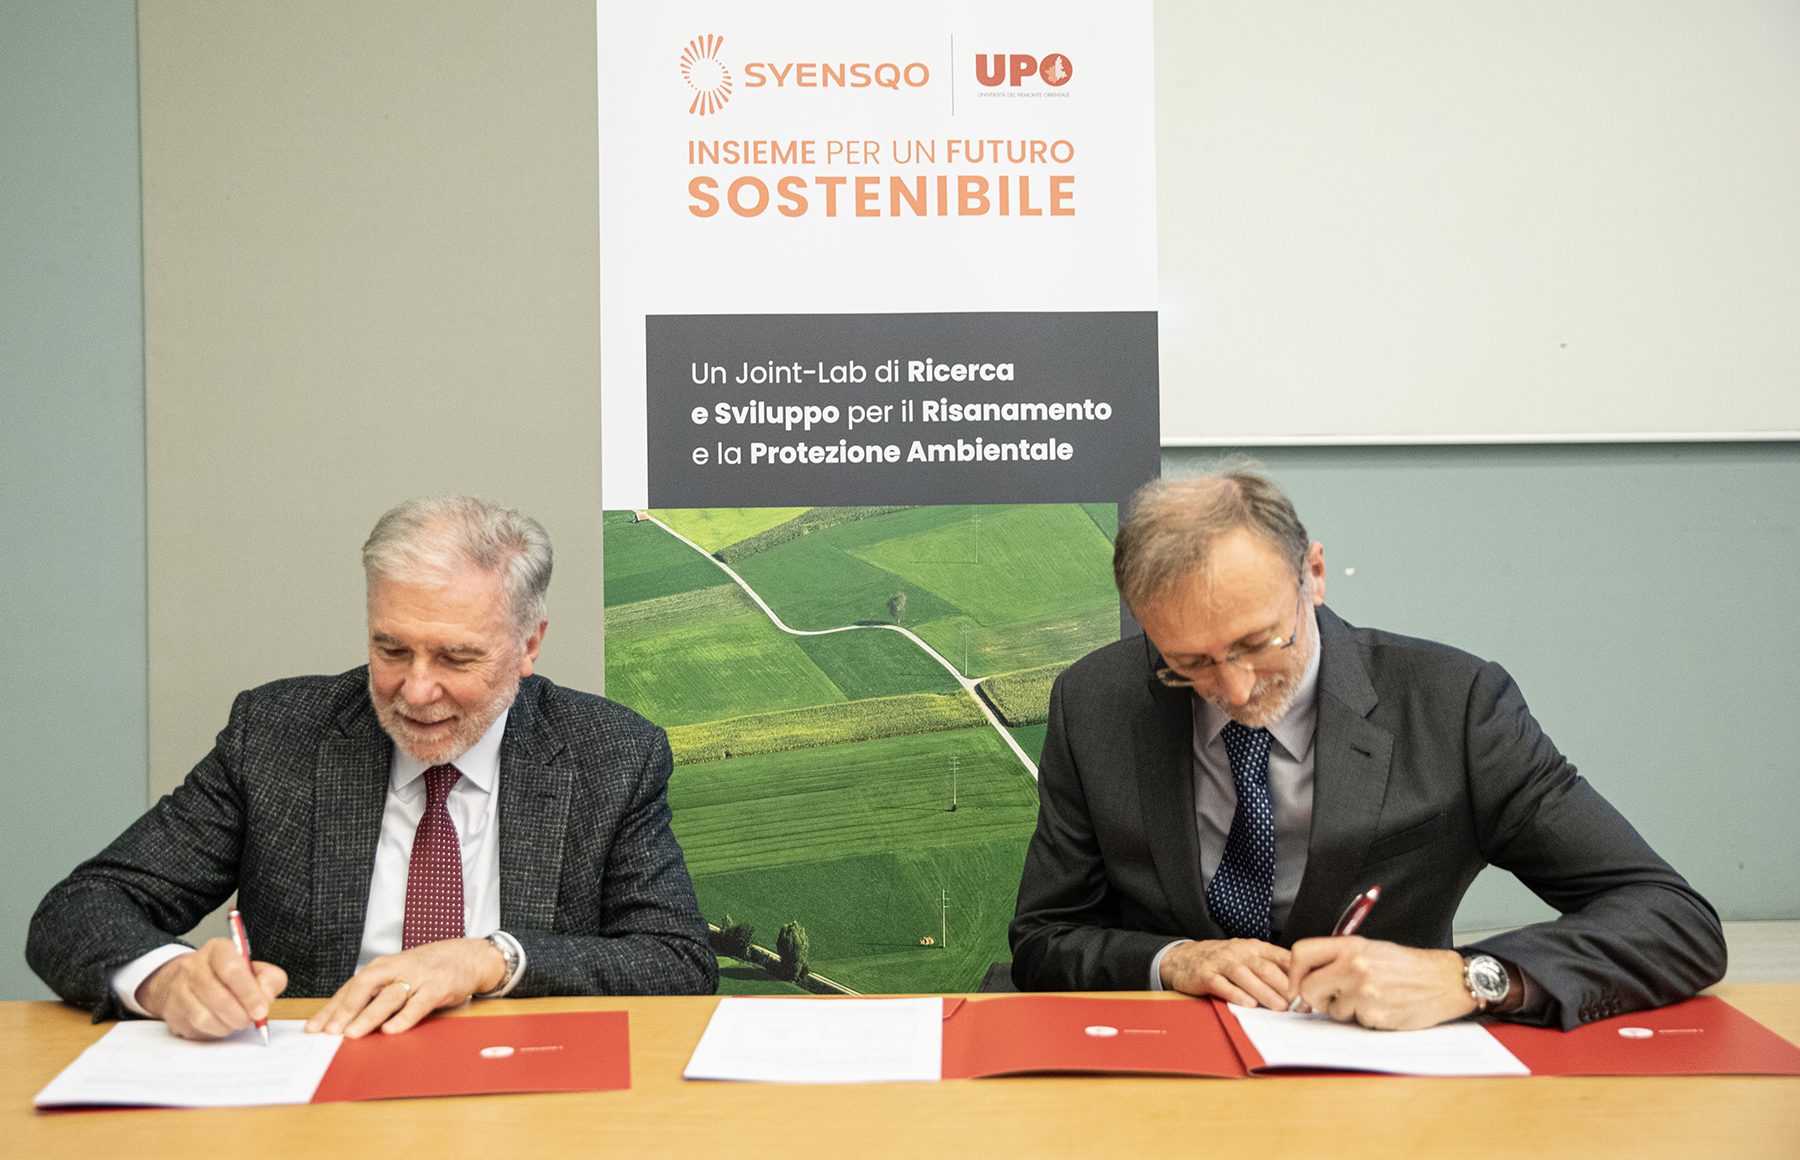 Università del Piemonte Orientale e Syensqo, un accordo per la tutela dell’ambiente